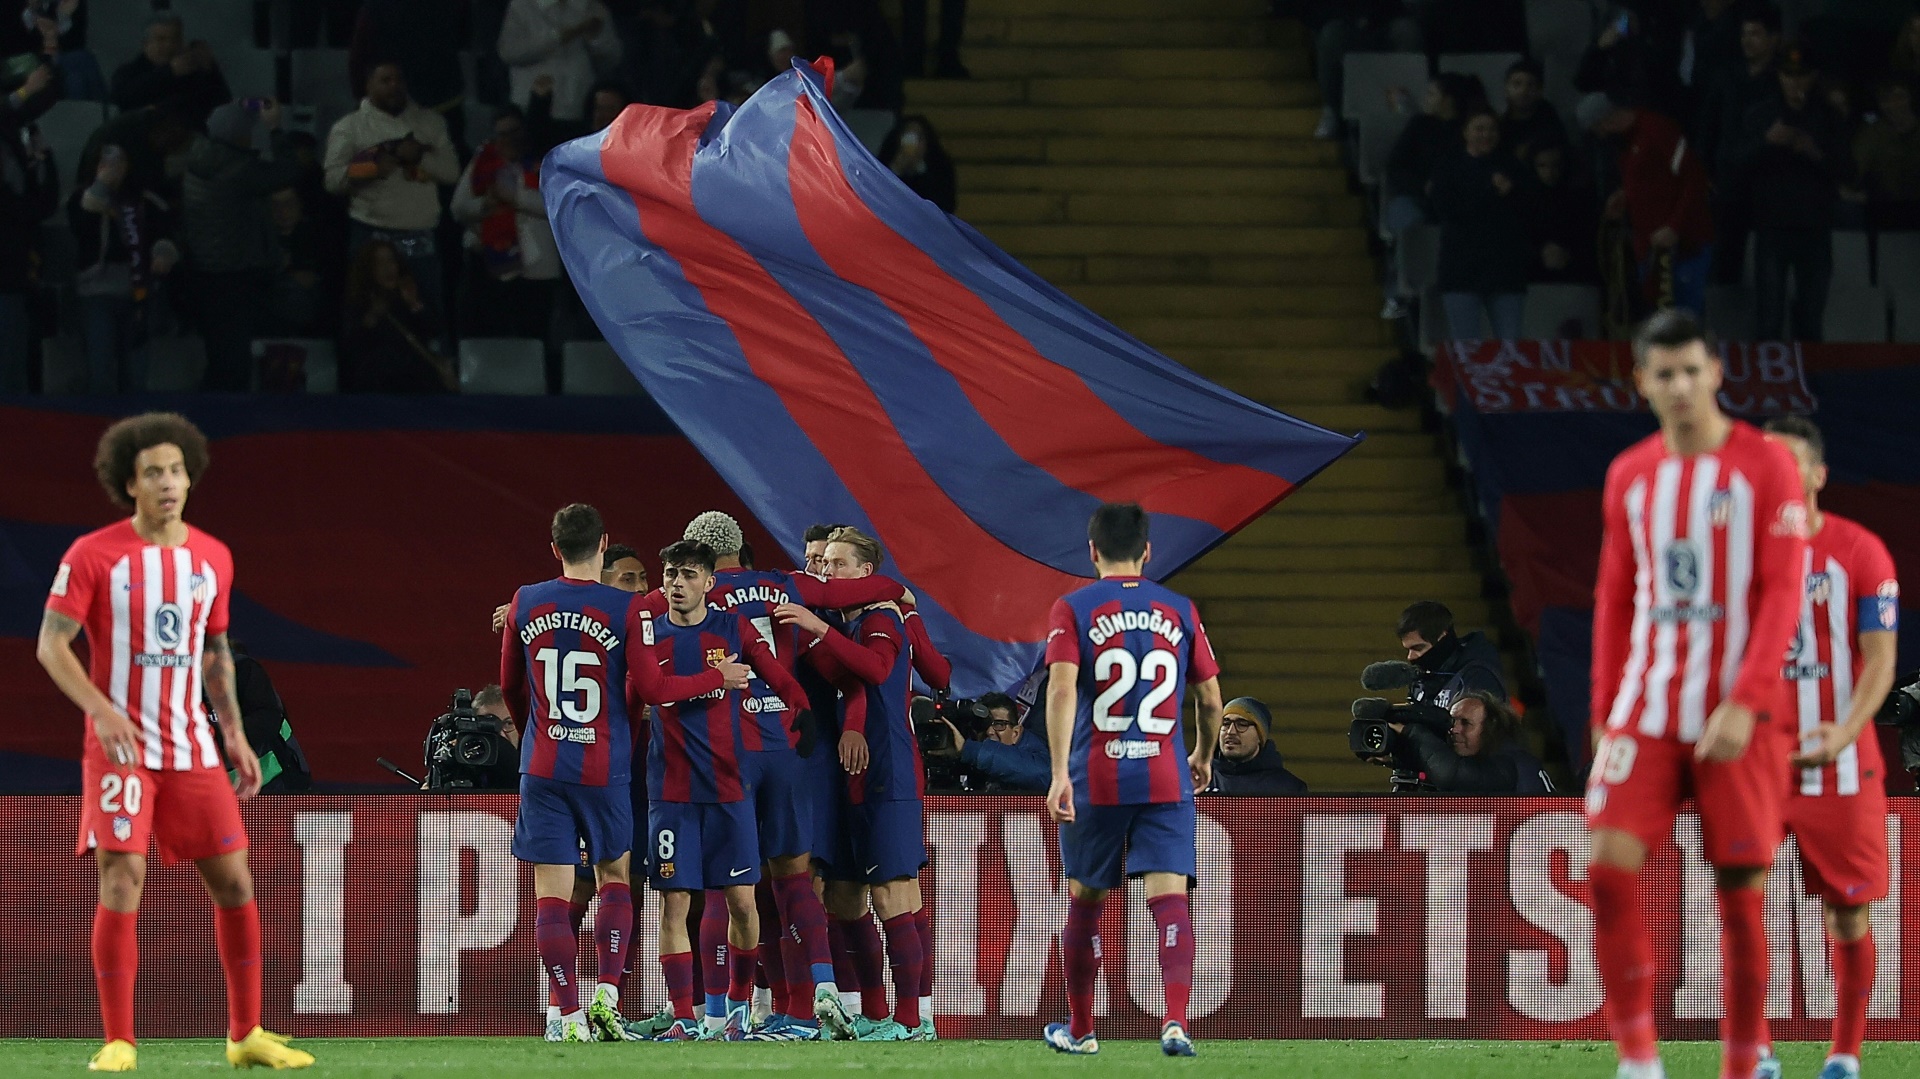 Barcelona schlägt Atletico und bleibt oben dran